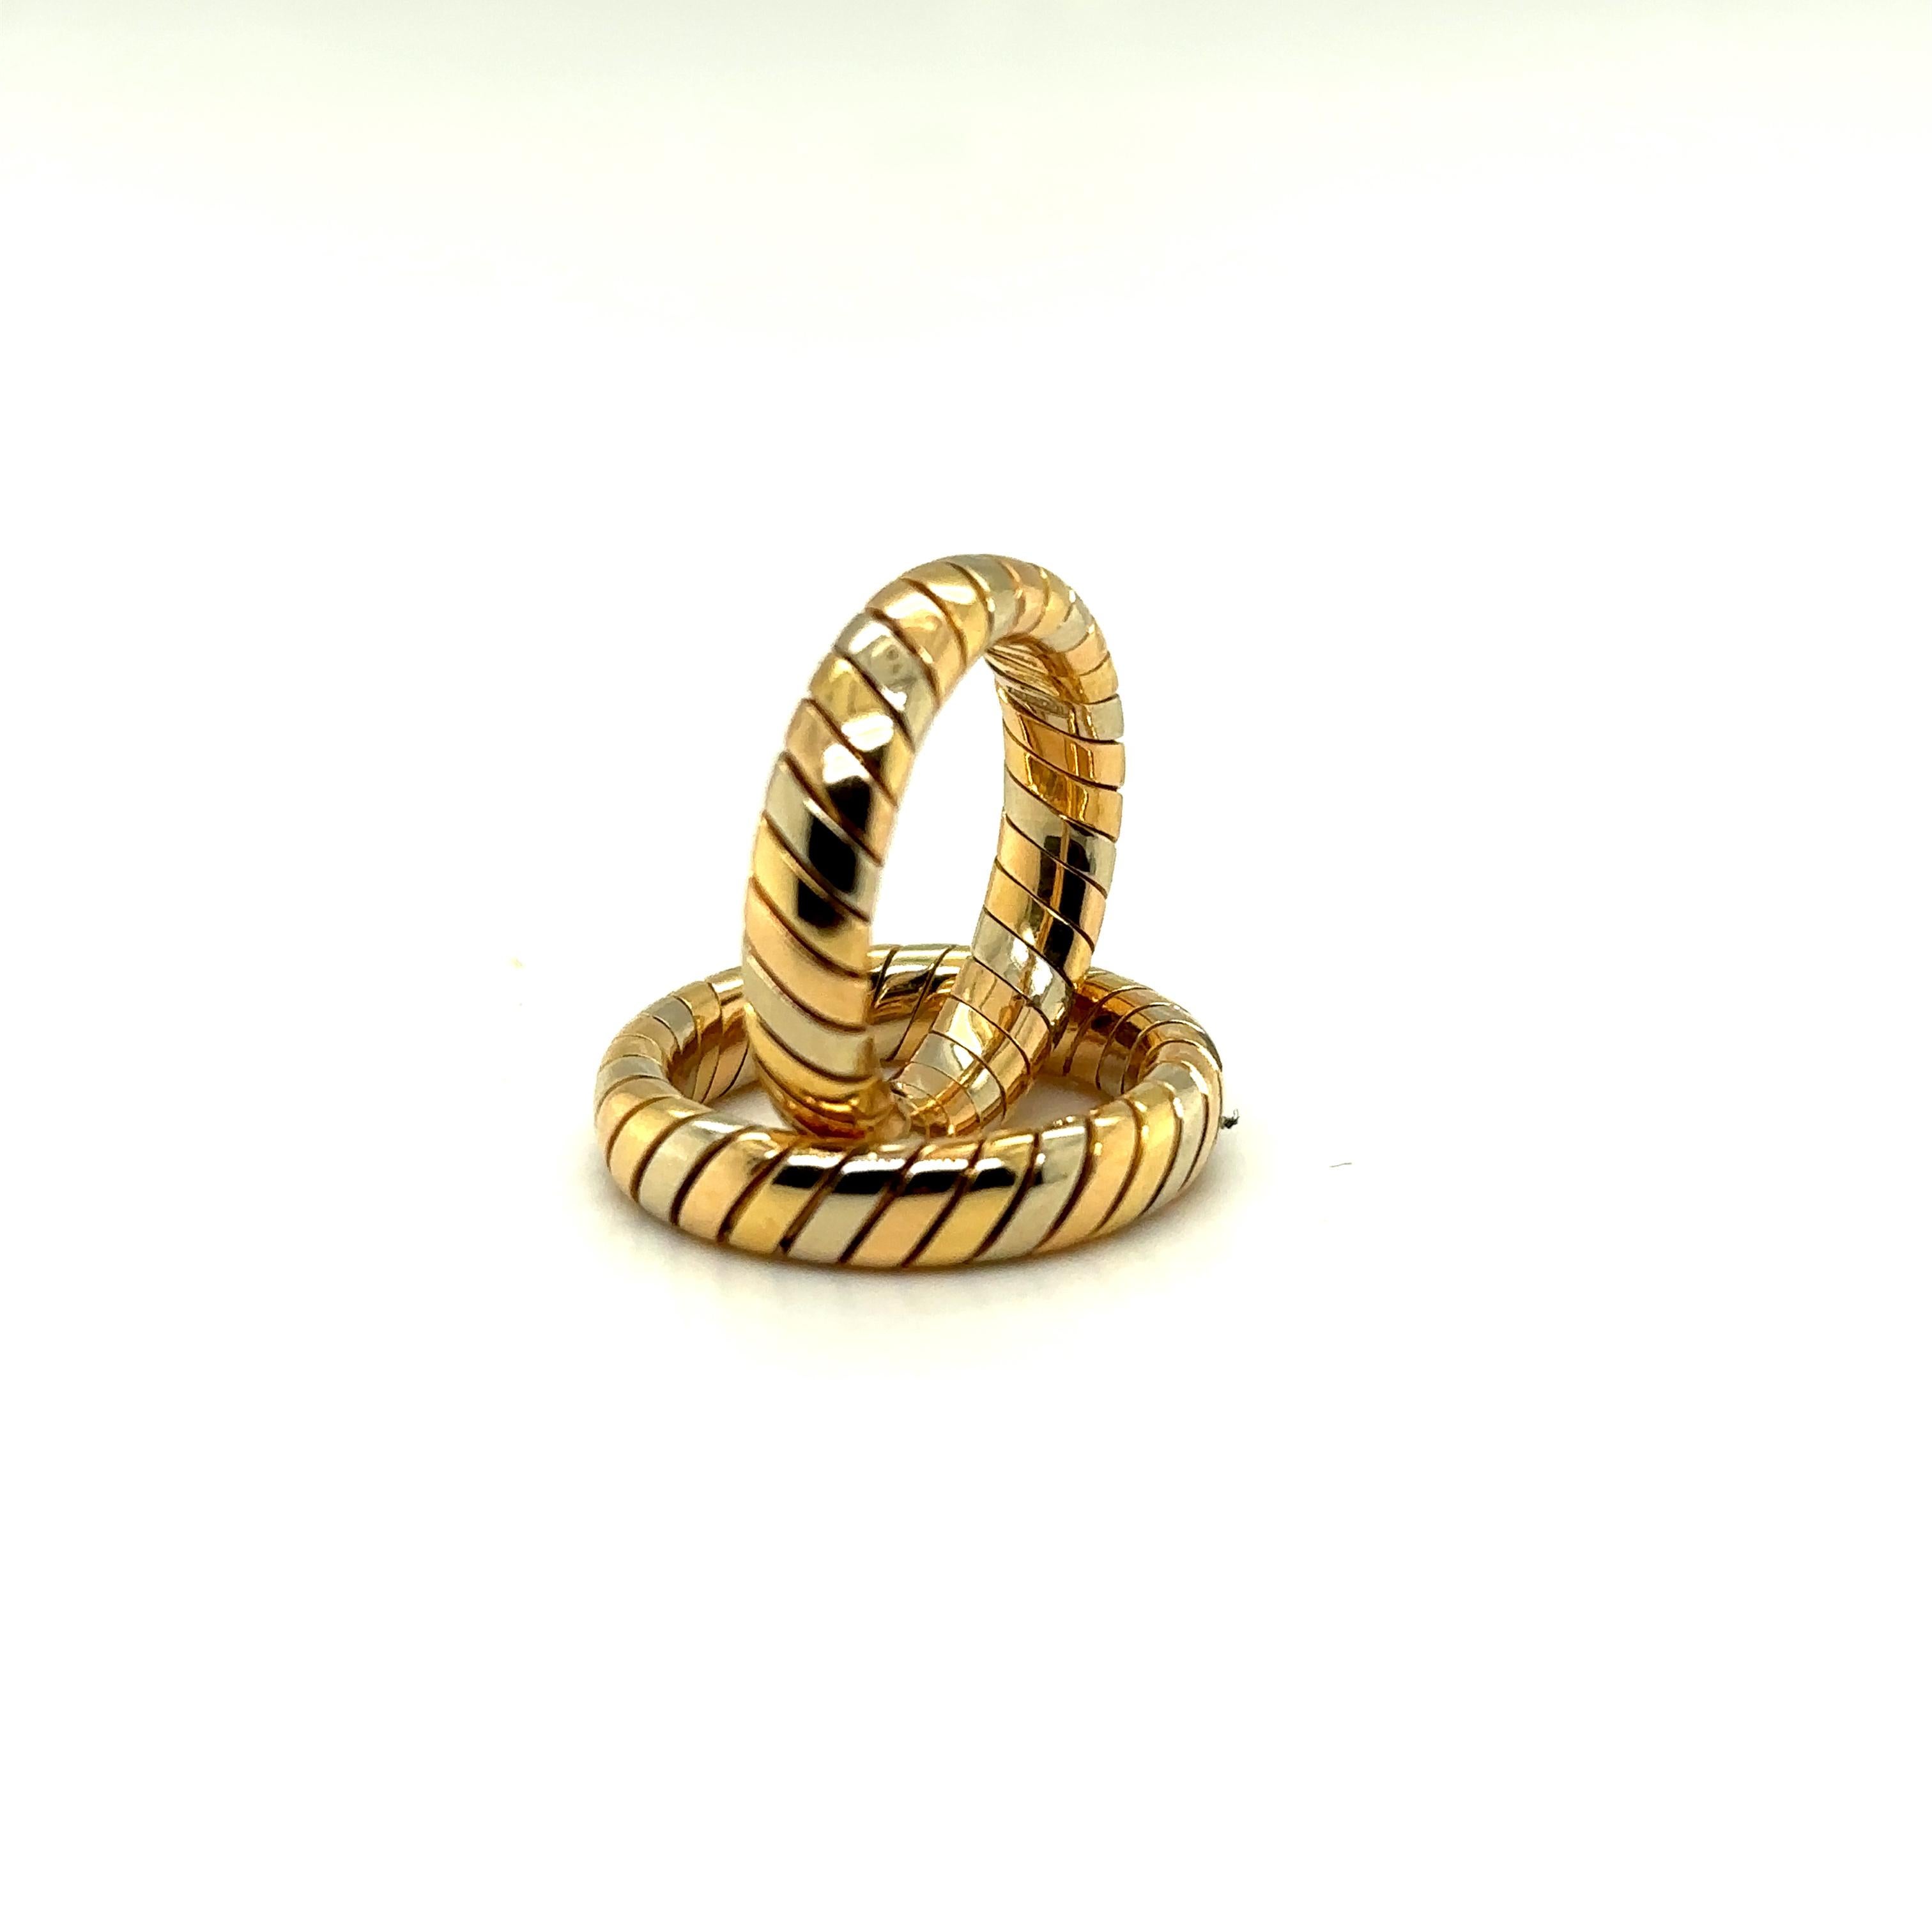 Tubogas-Stil
Aus dreifarbigem Gold
18 Karat Gelb-, Weiß- und Rotgold
Signiert Bulgari
Ring Größe 5 3/4

